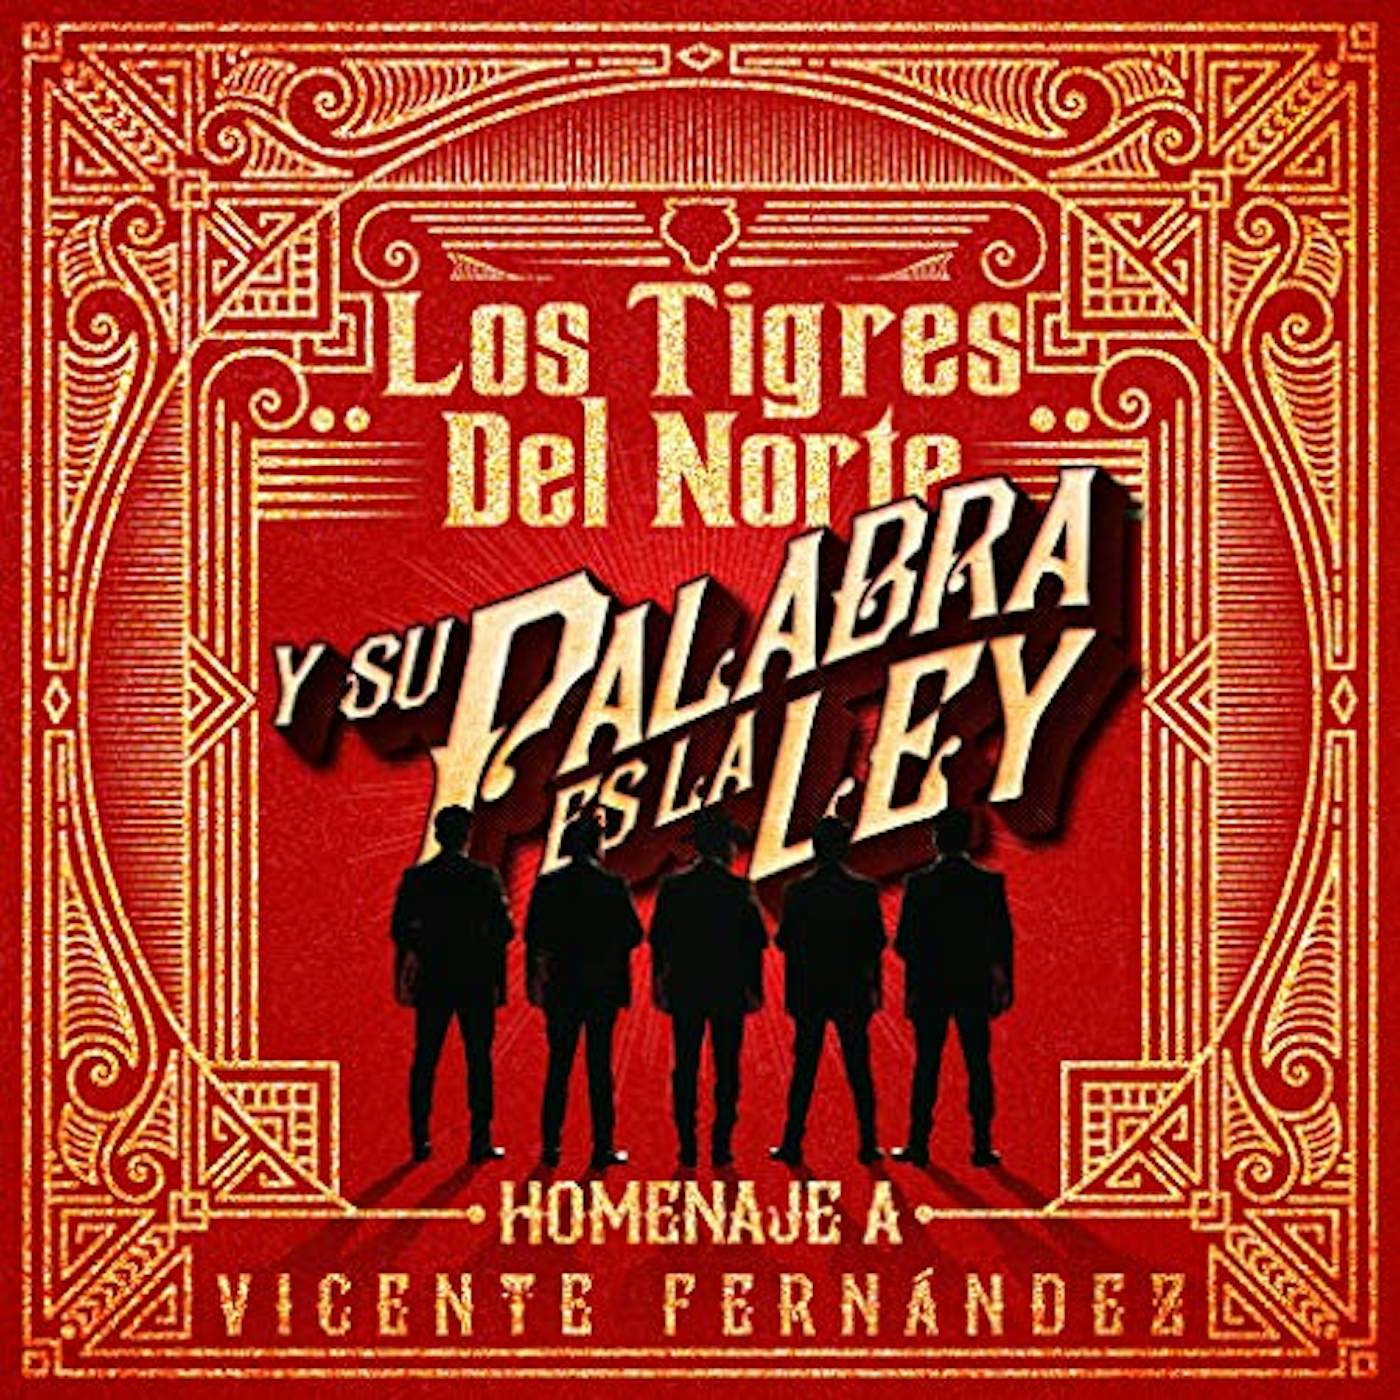 Los Tigres Del Norte Y SU PALABRA ES LA LEY: HOMENAJE A VICENTE CD